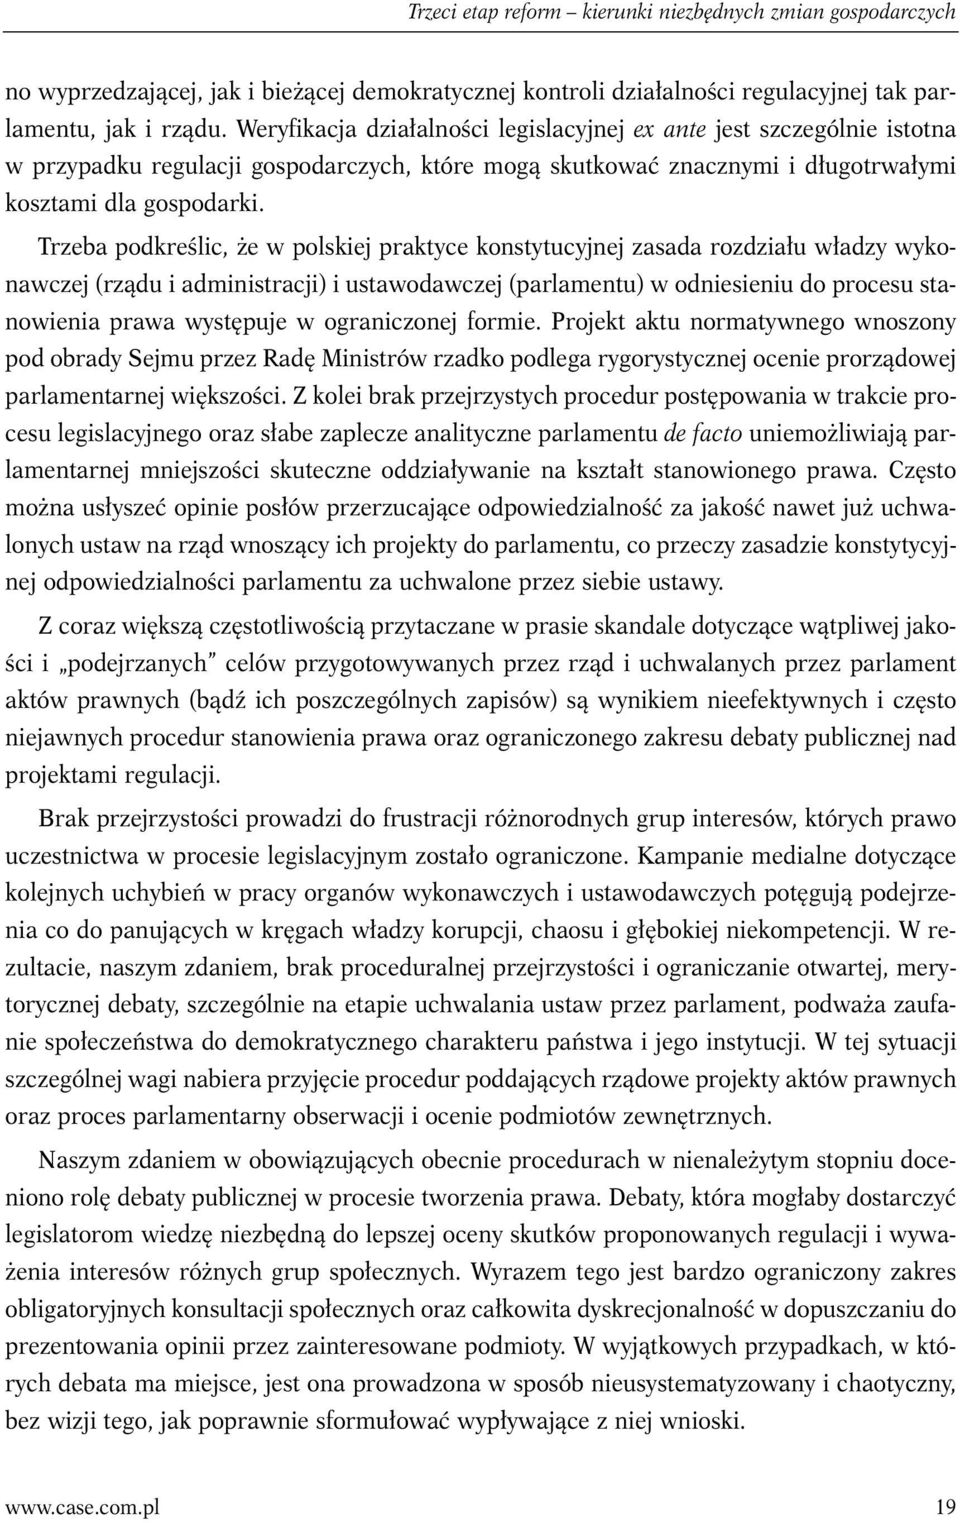 Trzeba podkreślic, że w polskiej praktyce konstytucyjnej zasada rozdziału władzy wykonawczej (rządu i administracji) i ustawodawczej (parlamentu) w odniesieniu do procesu stanowienia prawa występuje